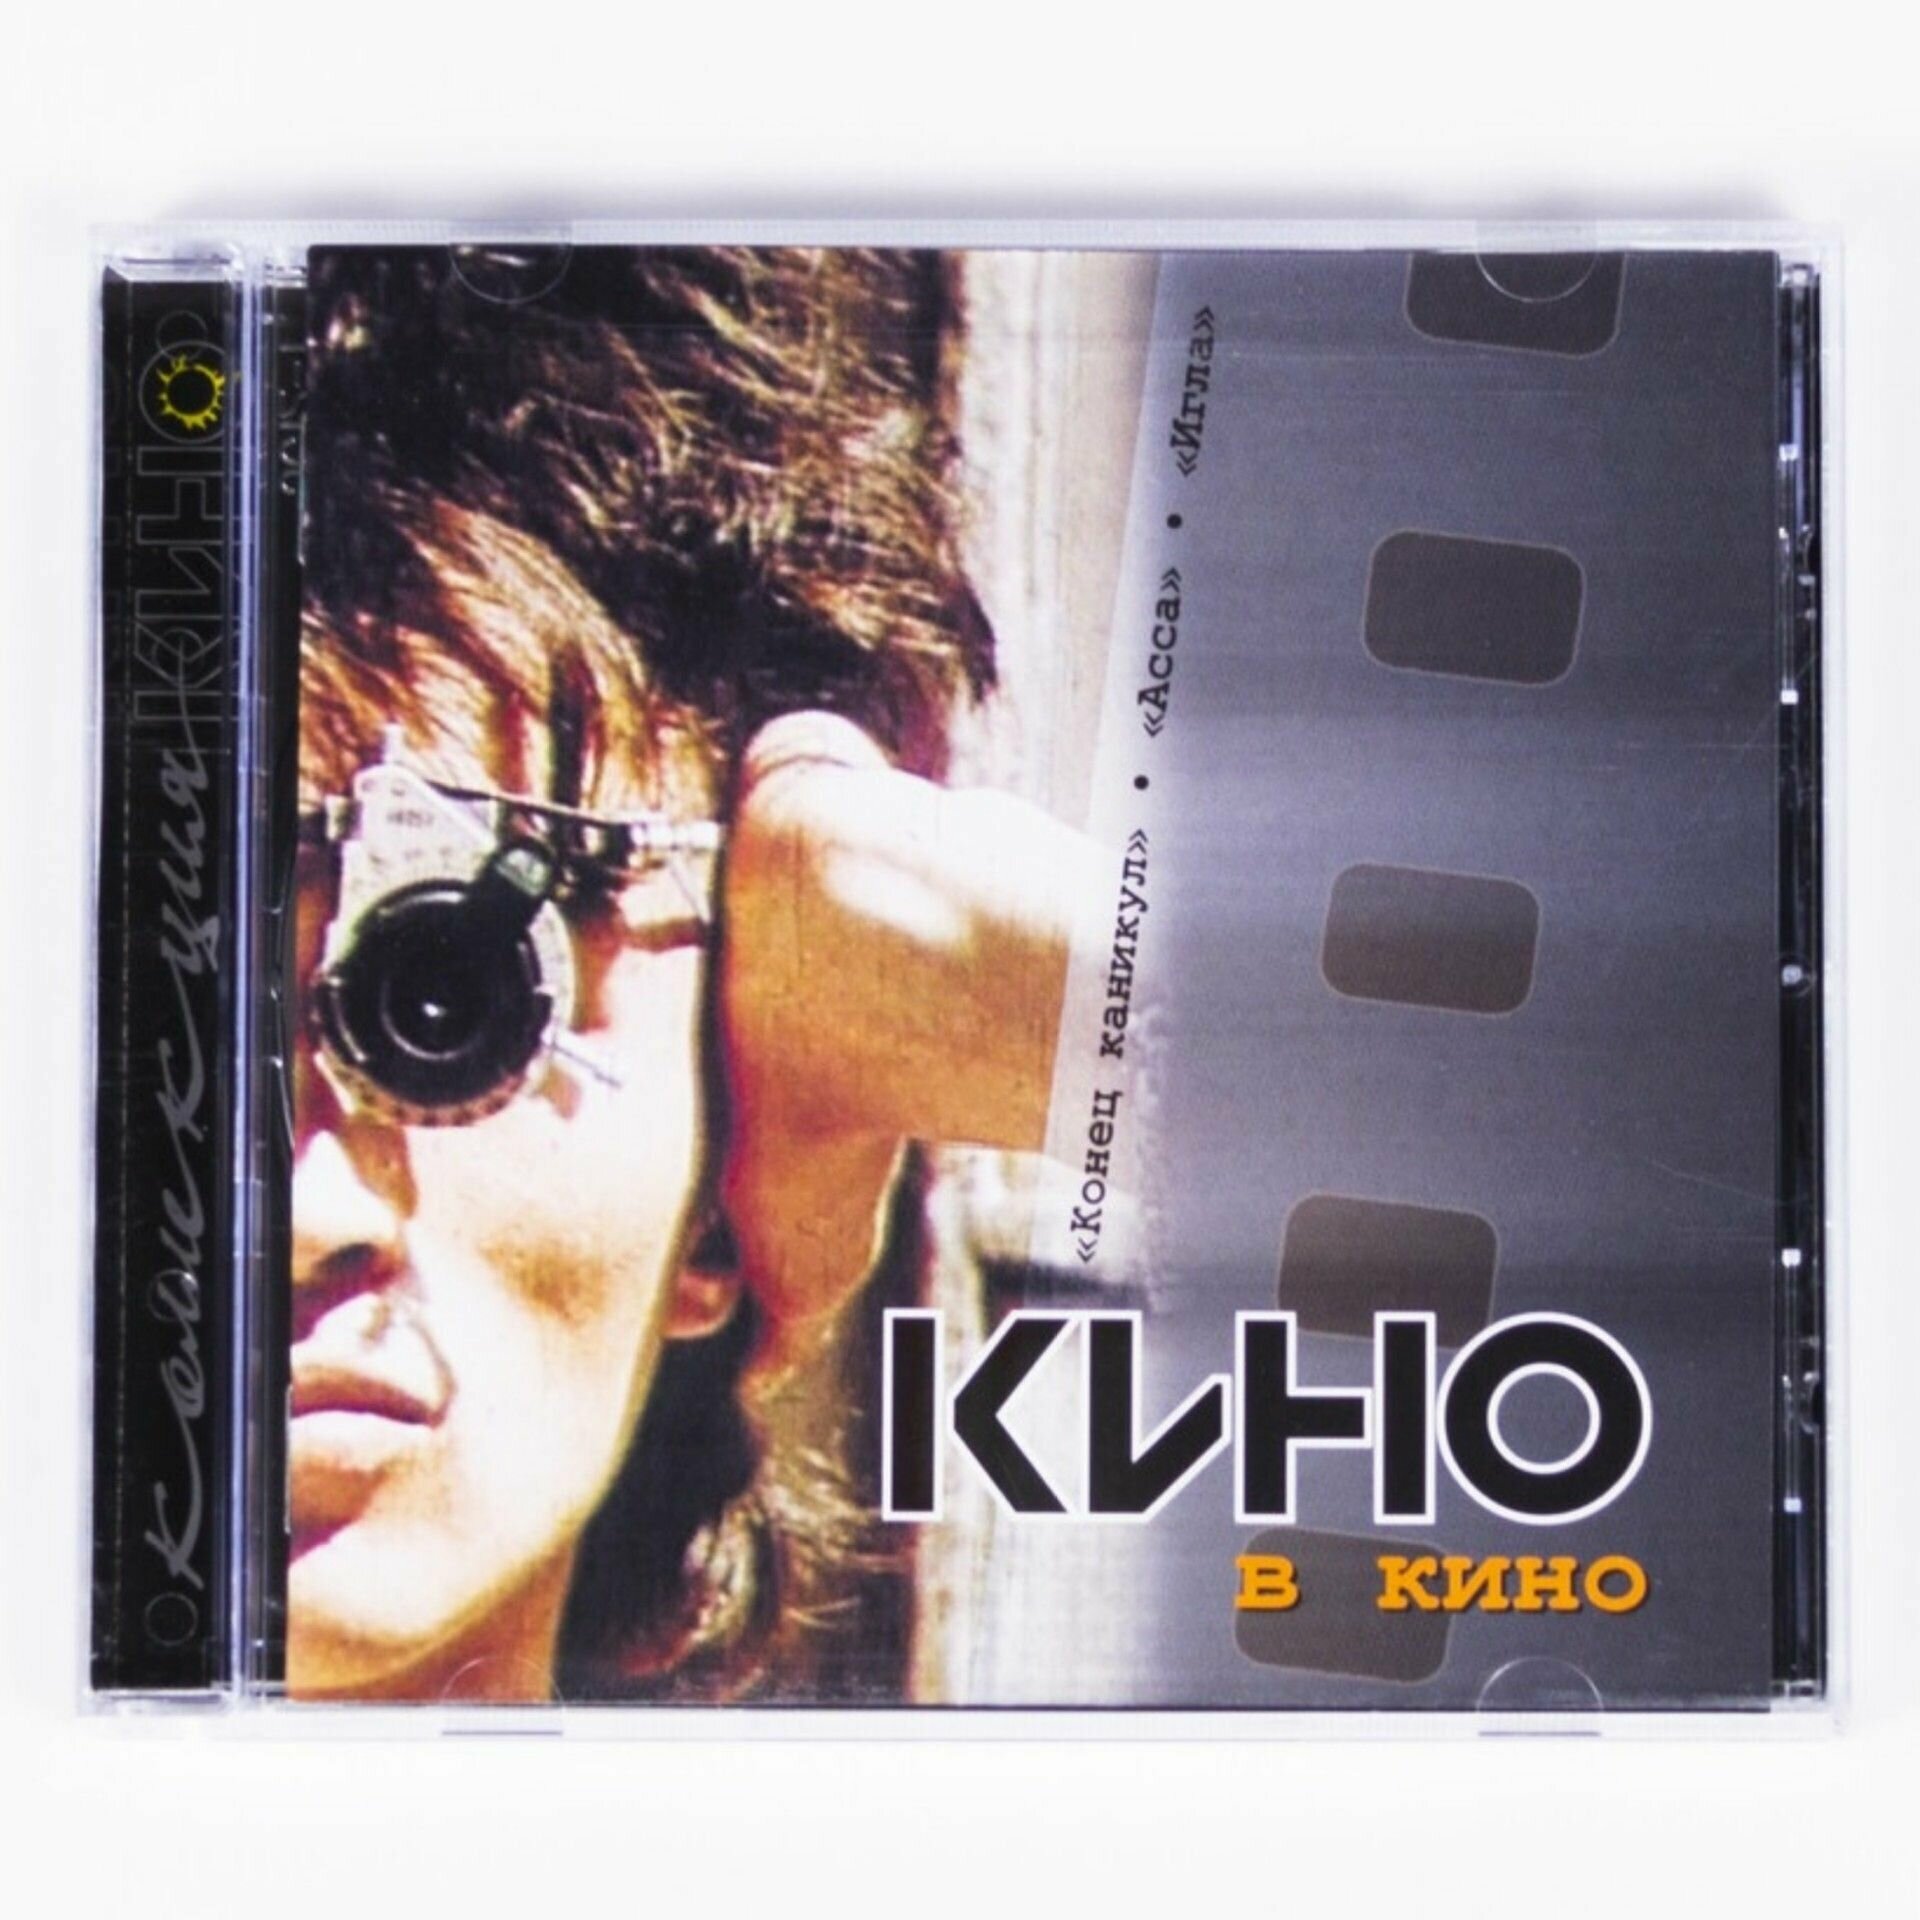 CD "Кино - Кино в кино" Музыкальный альбом, составленный из саундтреков, записанных рок-группой Кино к кинофильмам с их участием на компакт диске